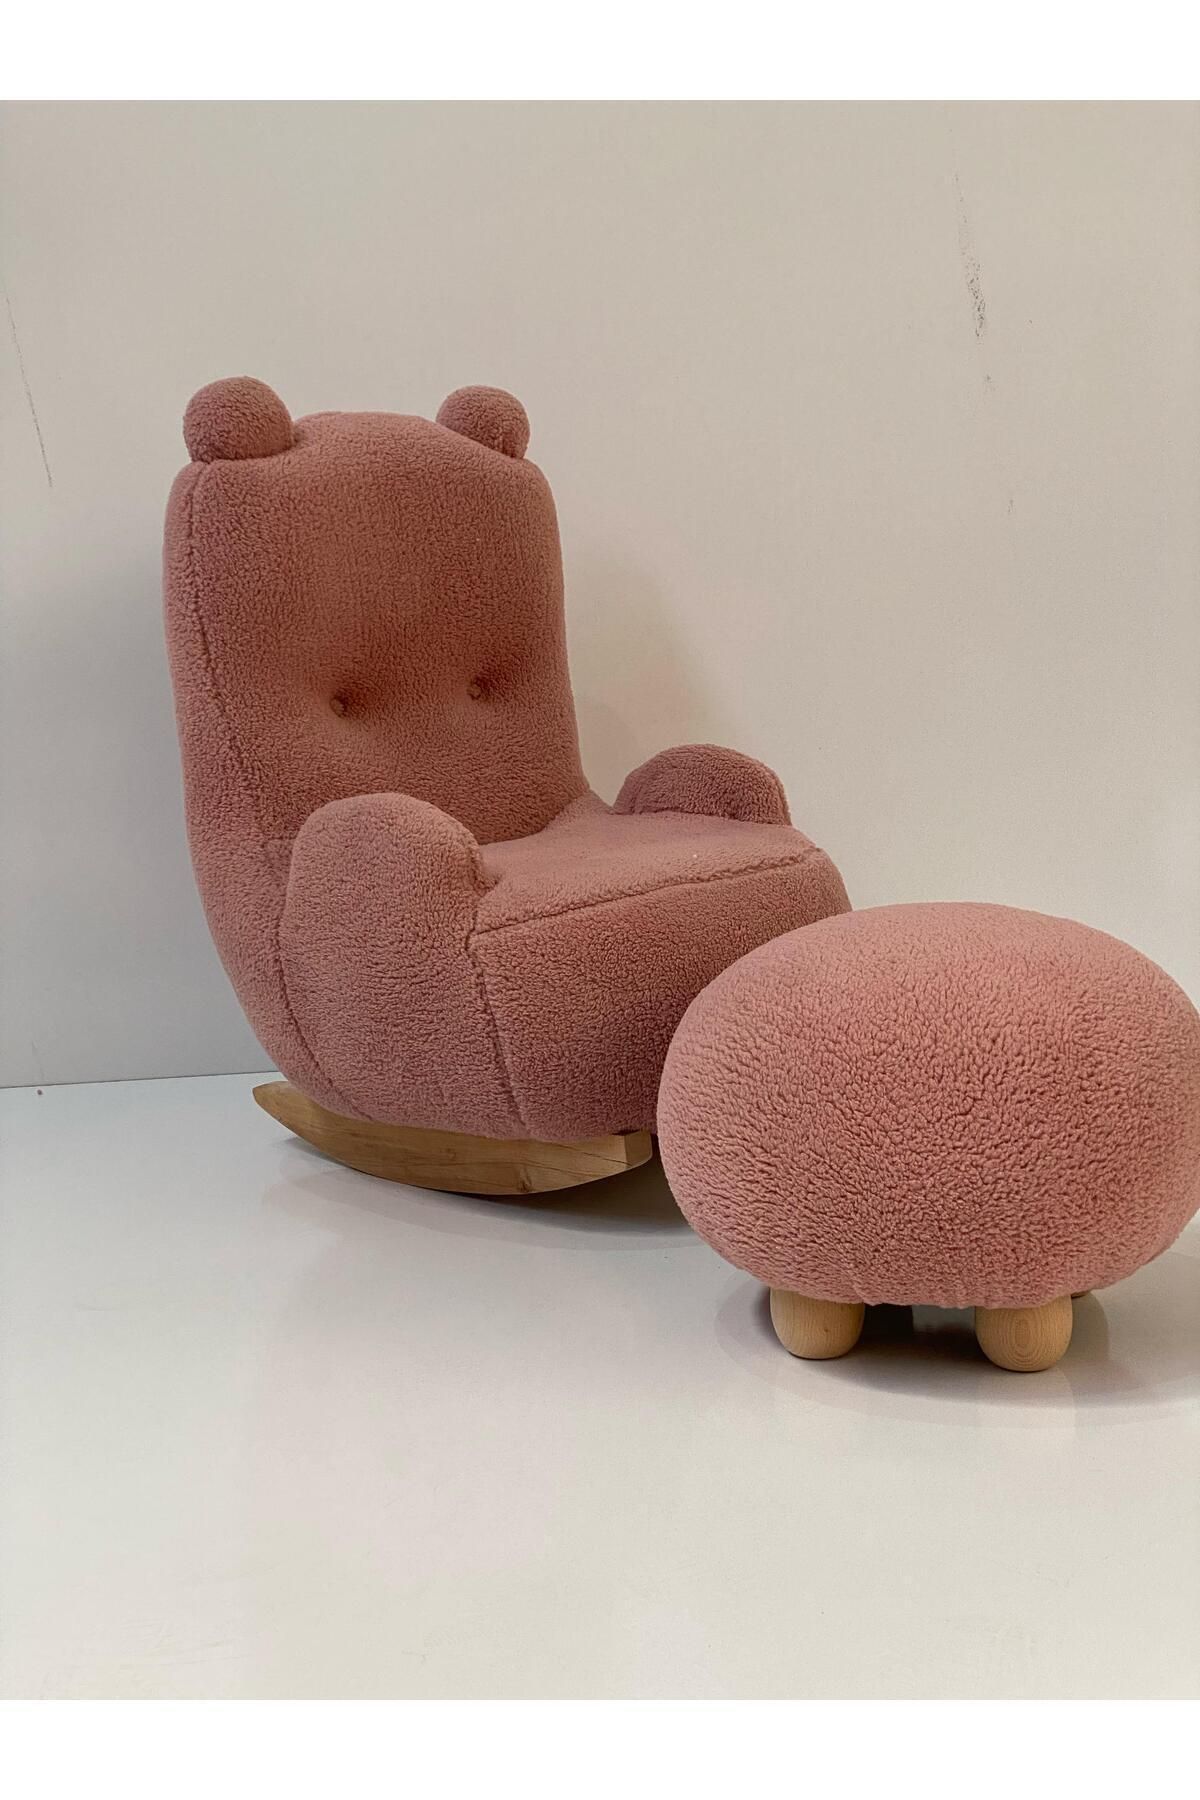 esilamobilya Sallanan Teddy Kumaşlı Ahşap Ayaklı Çocuk Bebek Koltuğu Sandalyesi Puflu (SALLANIR)